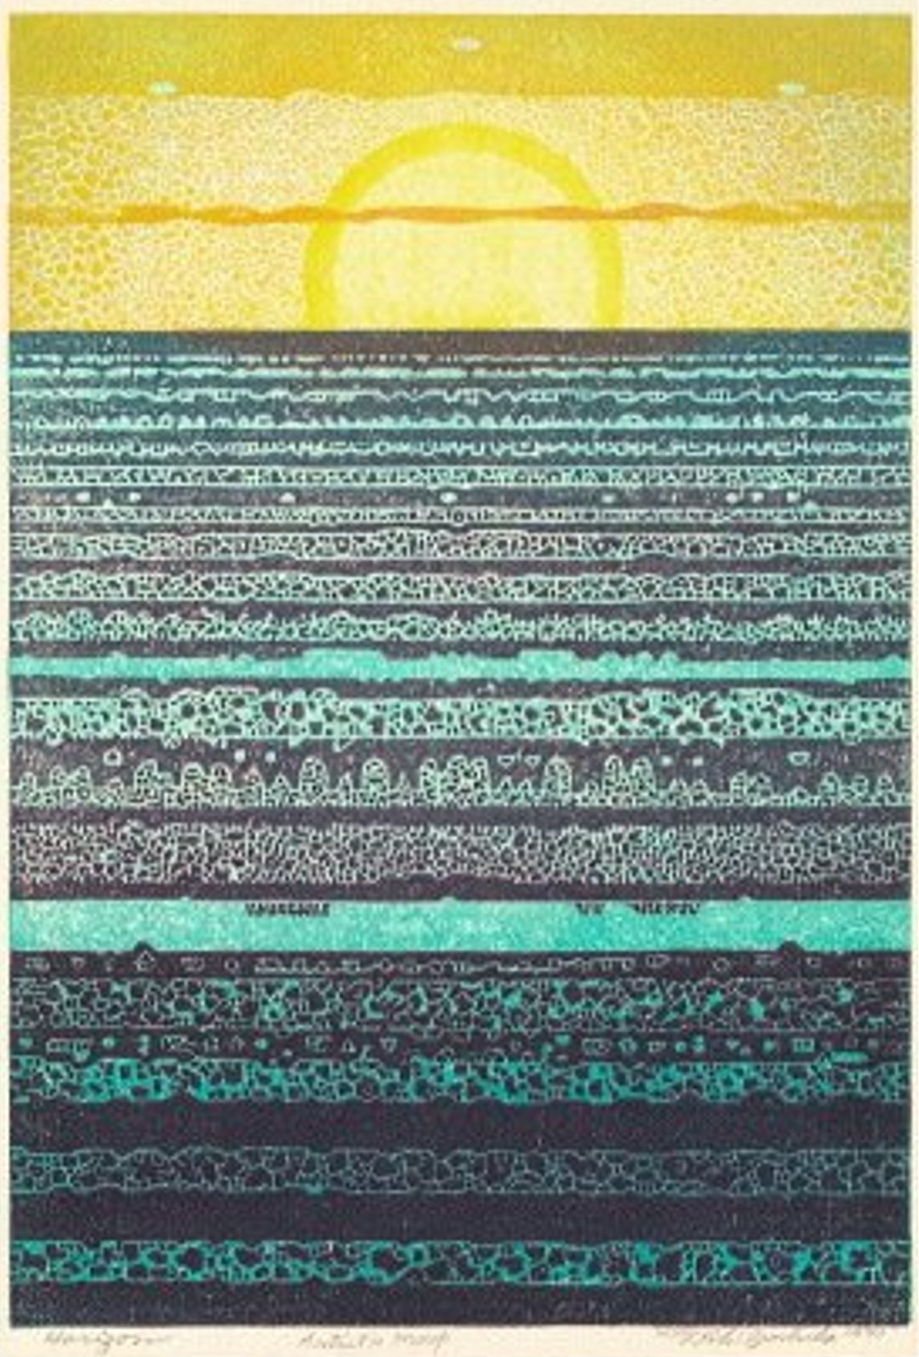 Toshi Yoshida “Horizon” 1971 woodblock print